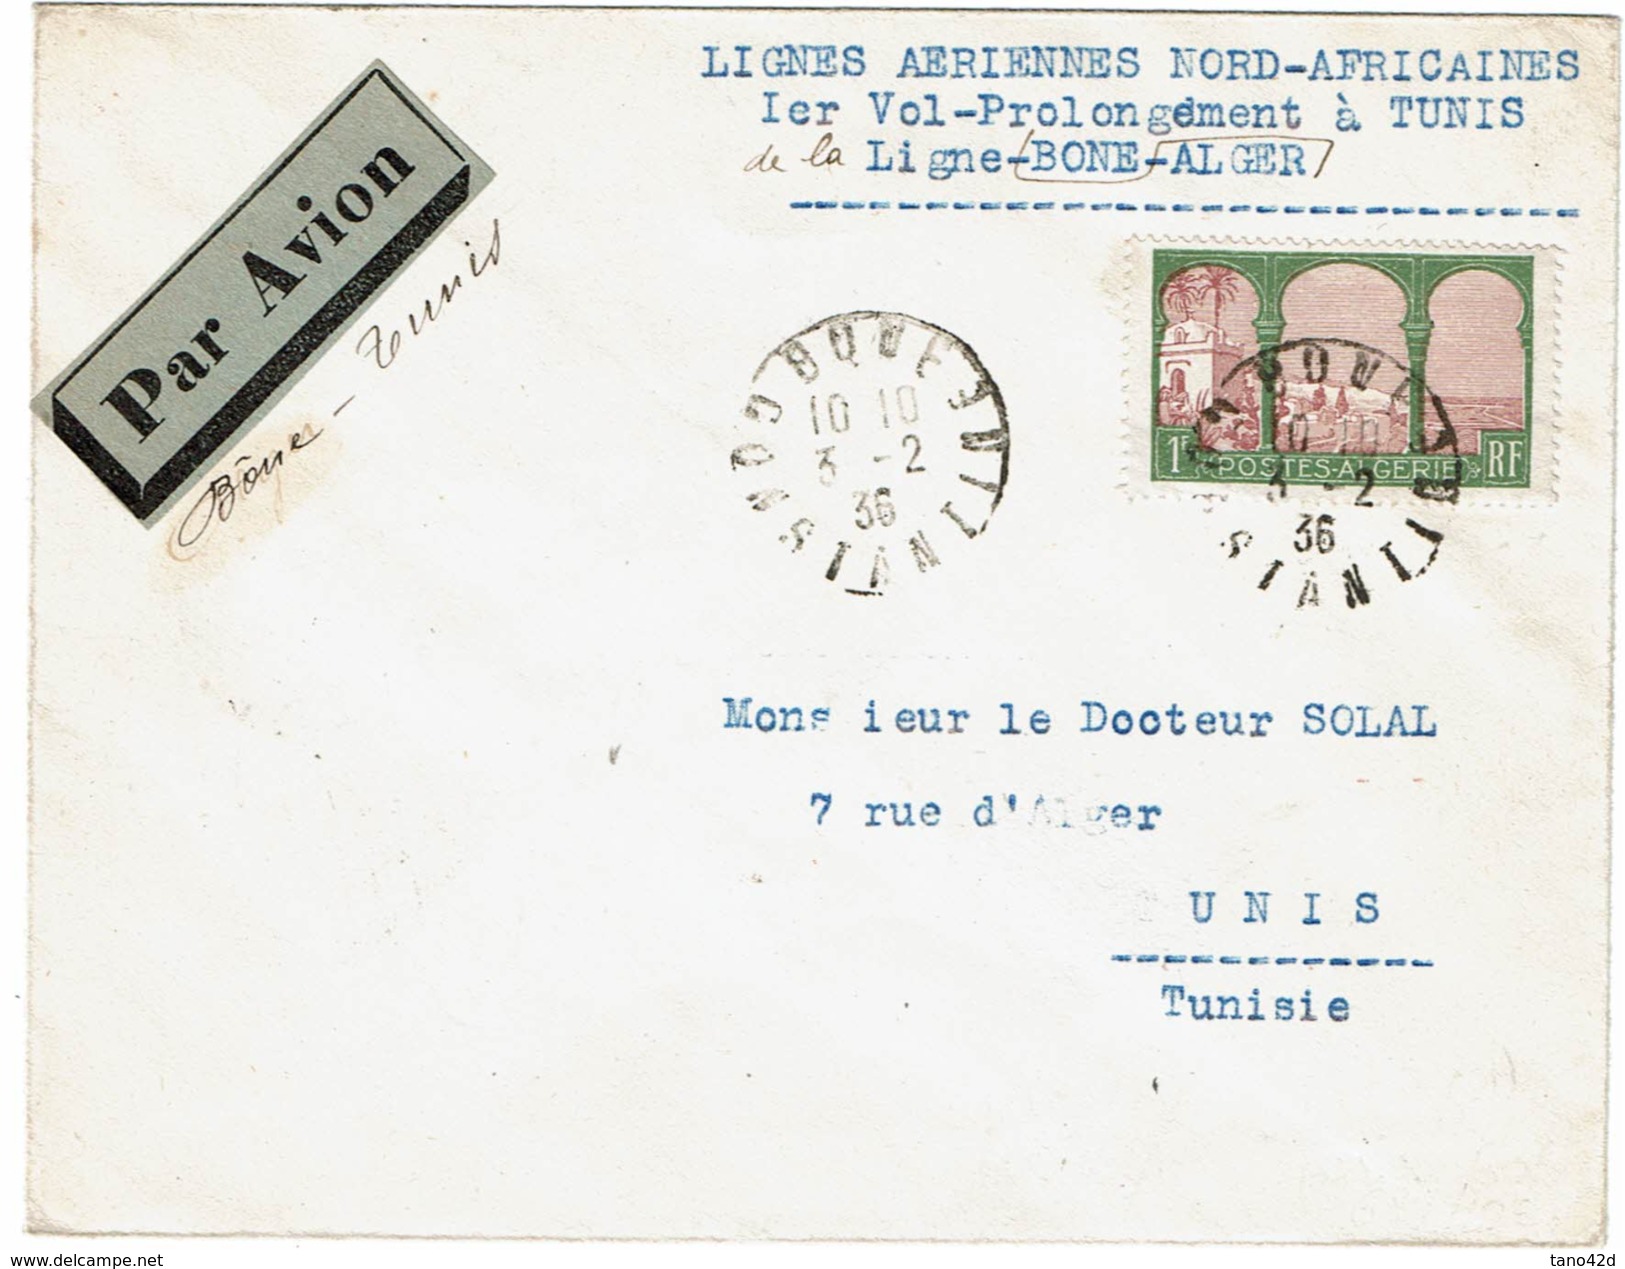 LMON1 - ALGERIE LIGNEA AERIENNES NORD-AFRICAINES 1er VOL BONE-TUNIS 3/2/1936 - Posta Aerea